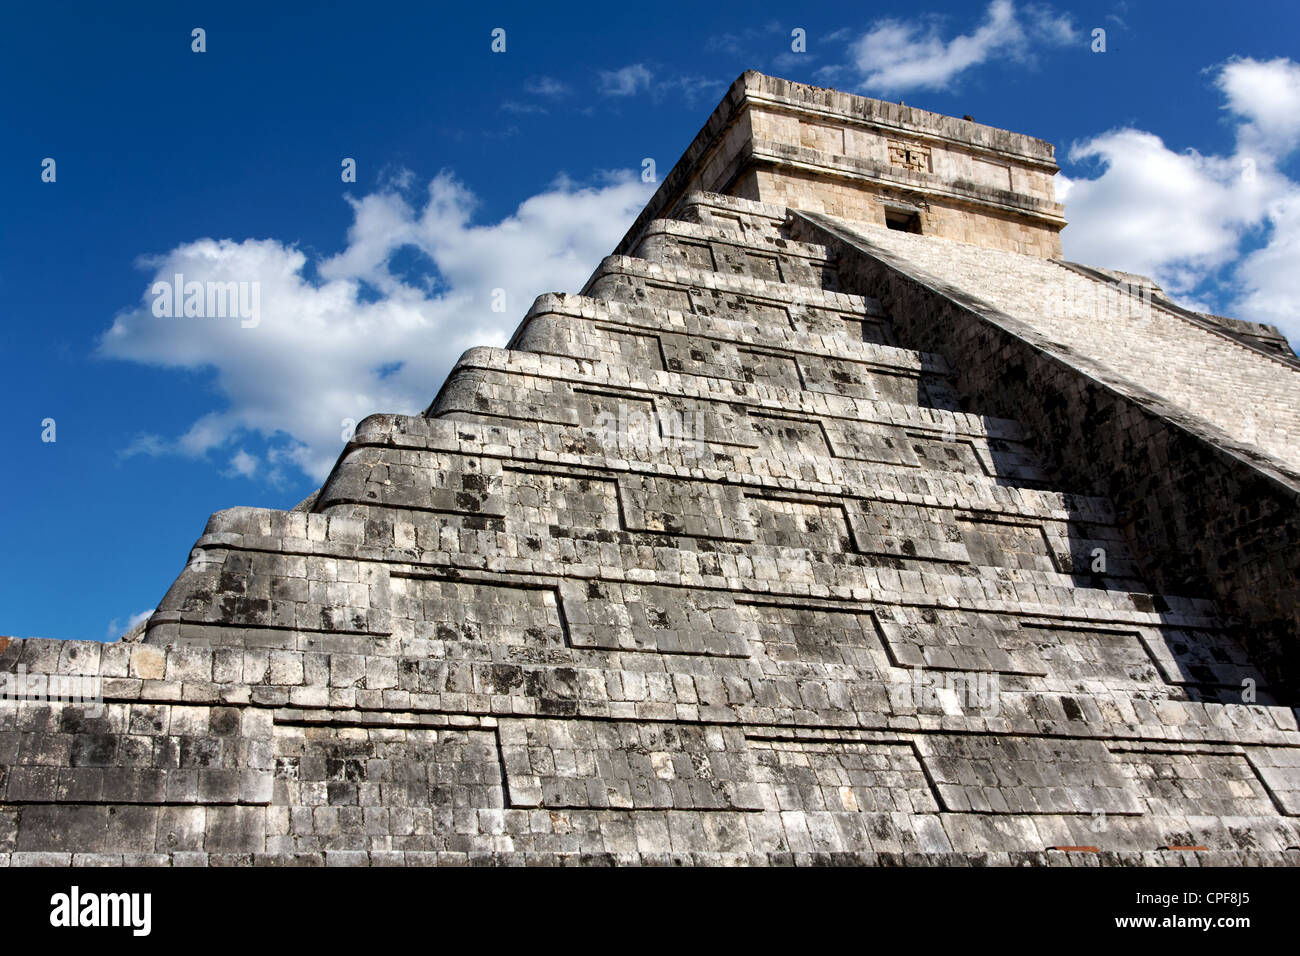 Angled view up the Mayan Kukulkan pyramid at the ancient city of Chichen Itza, Yucatan, Mexico. Stock Photo